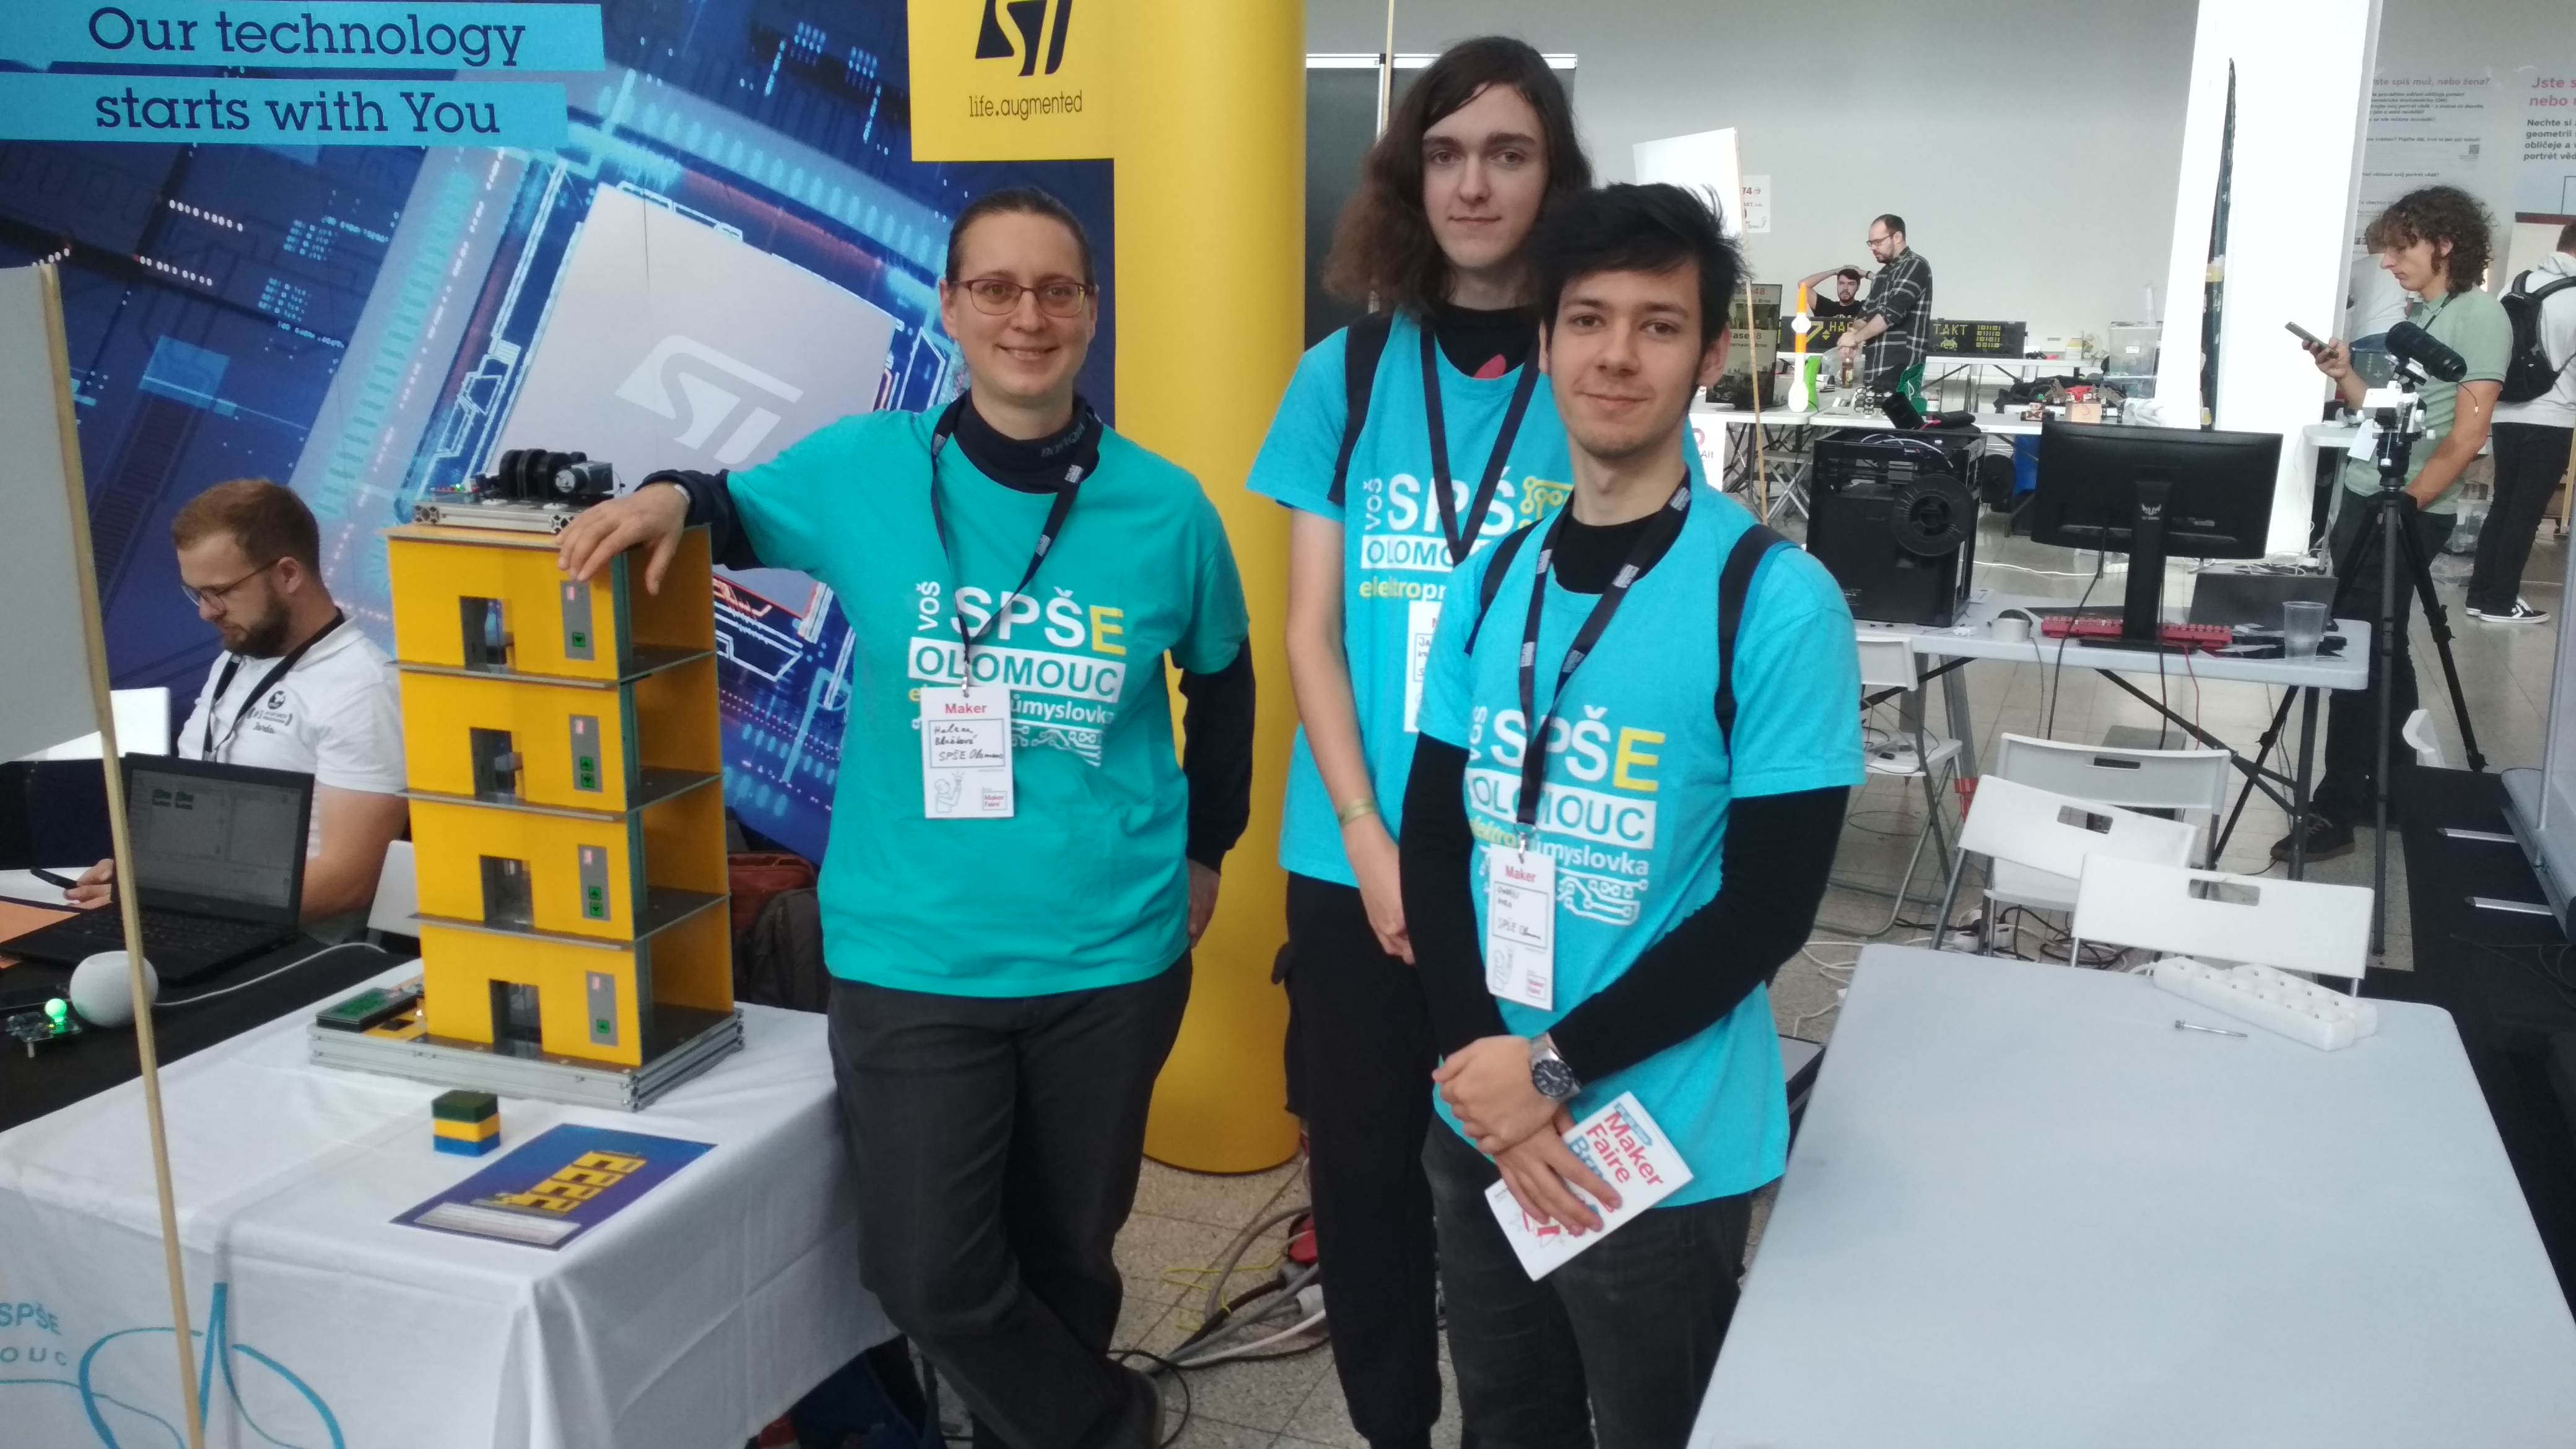 Naše účast na Maker Faire v Olomouci a Brně